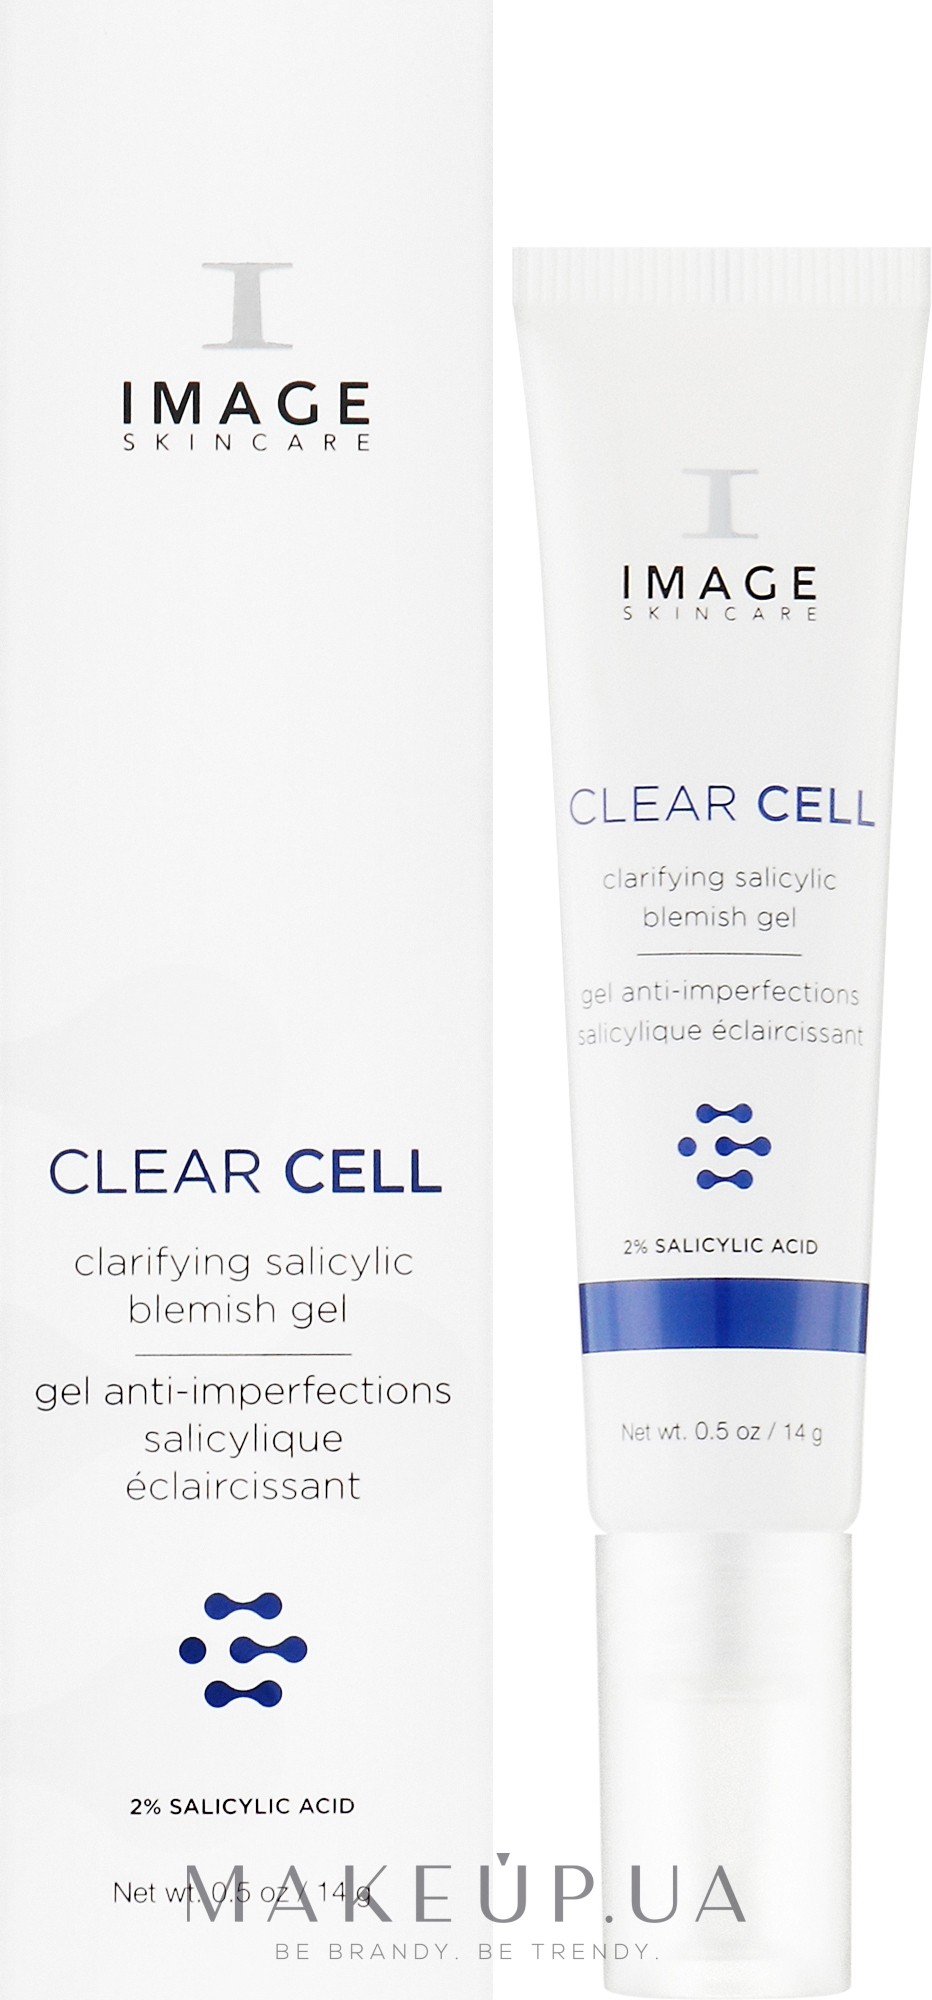 Осветляющий гель для локального использования - Image Skincare Clear Cell Clarifying Salicylic Blemish Gel — фото 14g